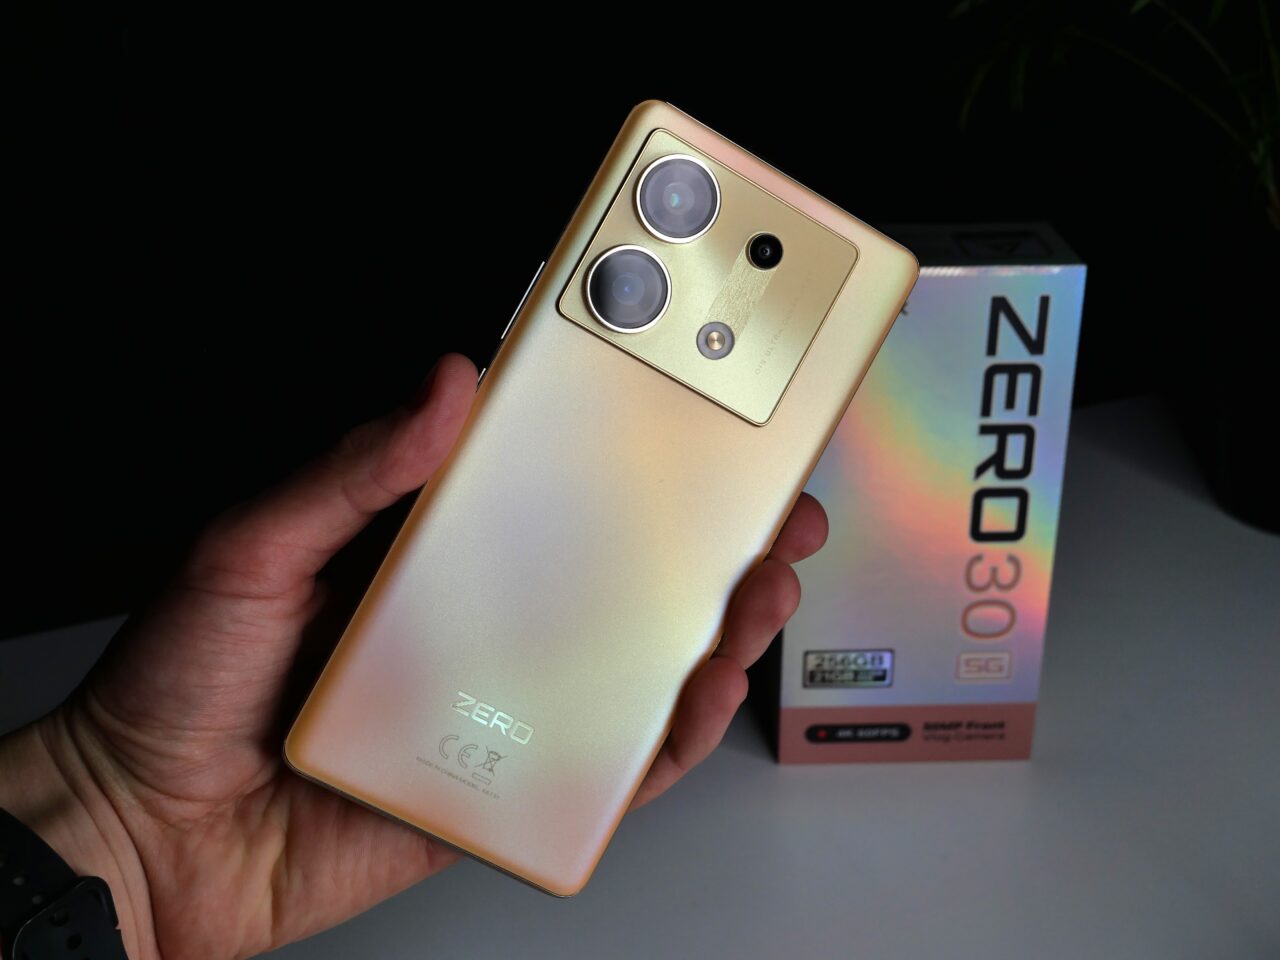 Ręka trzymająca złoty smartfon z trzema obiektywami aparatu i logo na plecach, obok opakowanie z napisem "ZERO 30 5G".